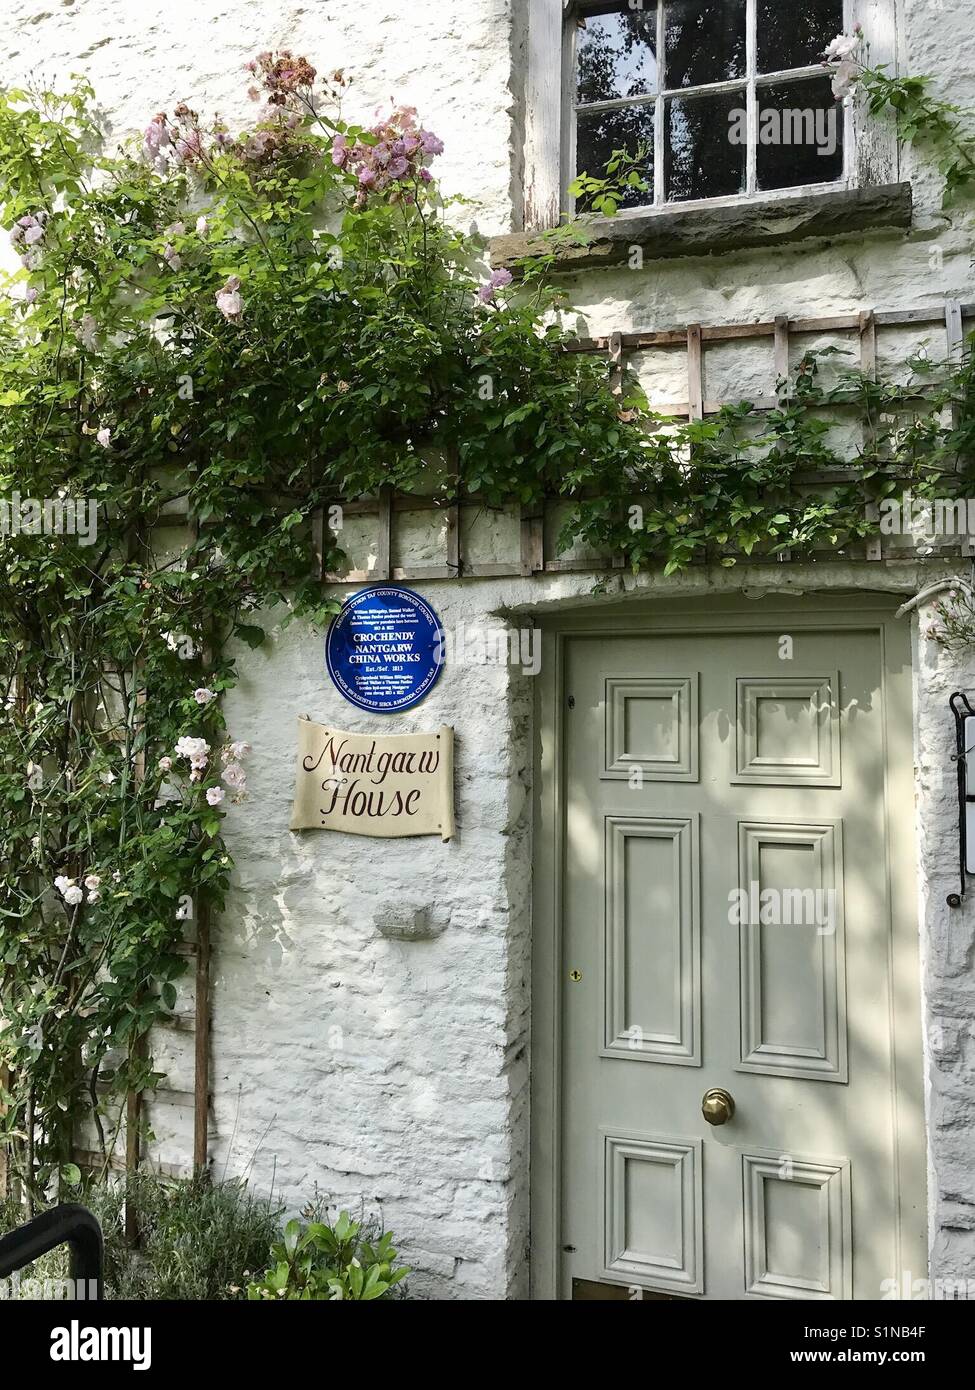 Nantgarw Haus, in der Nähe von Cardiff, Wales ist, wo die renommierten Nantgarw China arbeitet in 1813 von William Billingsley gegründet wurde. Jetzt ein Museum. Stockfoto